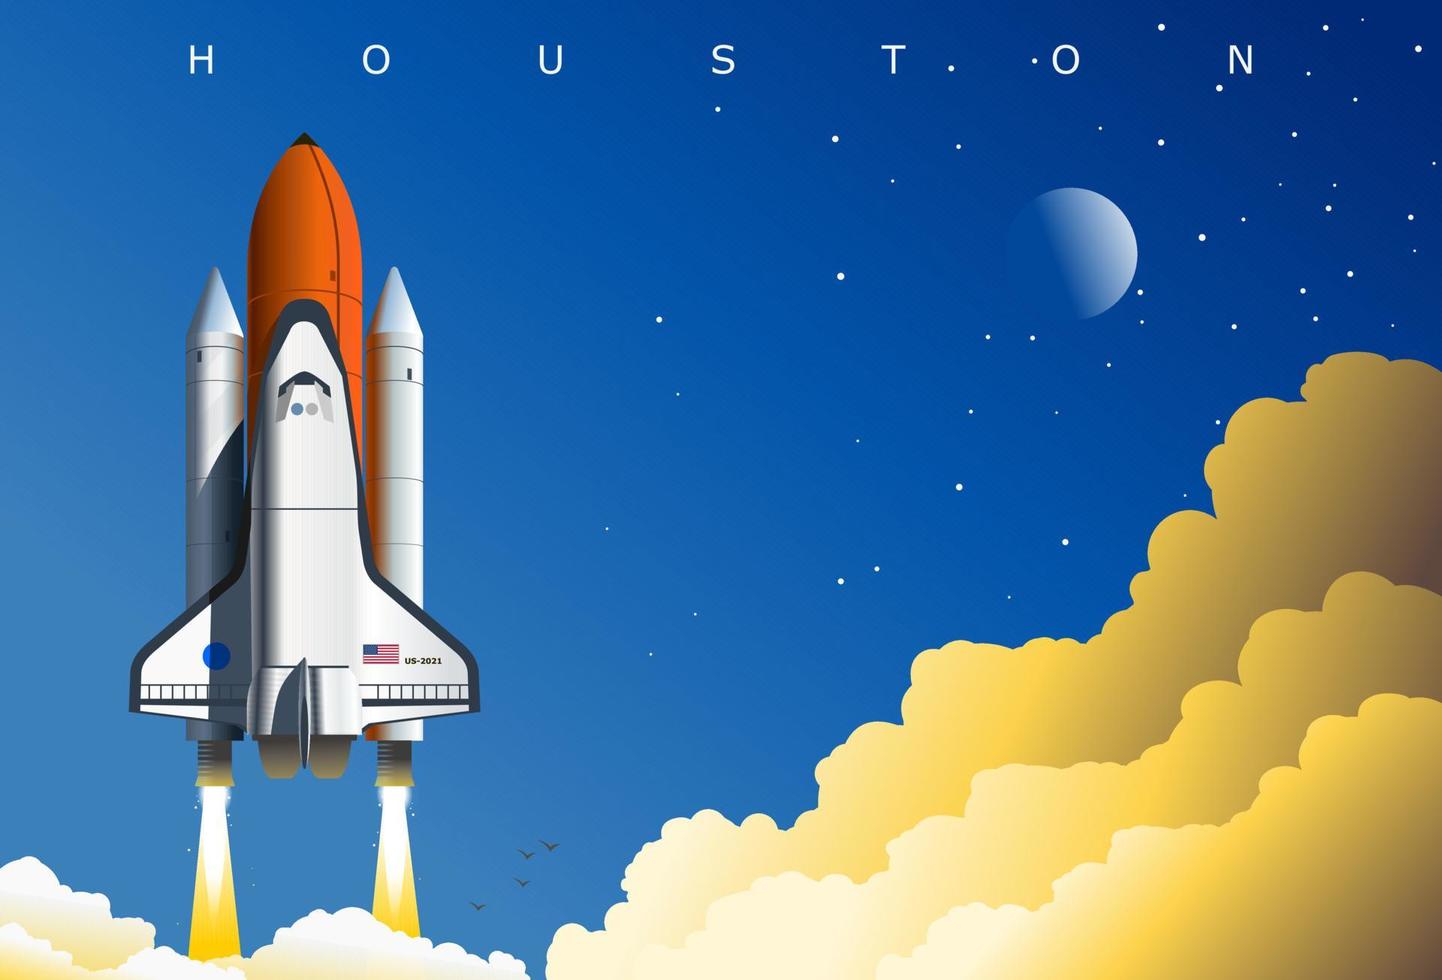 amerikansk rymdfärja uppskjutning, symbolisk illustration, houston, tx, usa. konceptkonstaffisch tillägnad rymdutforskning och det amerikanska rymdprogrammet. vektor